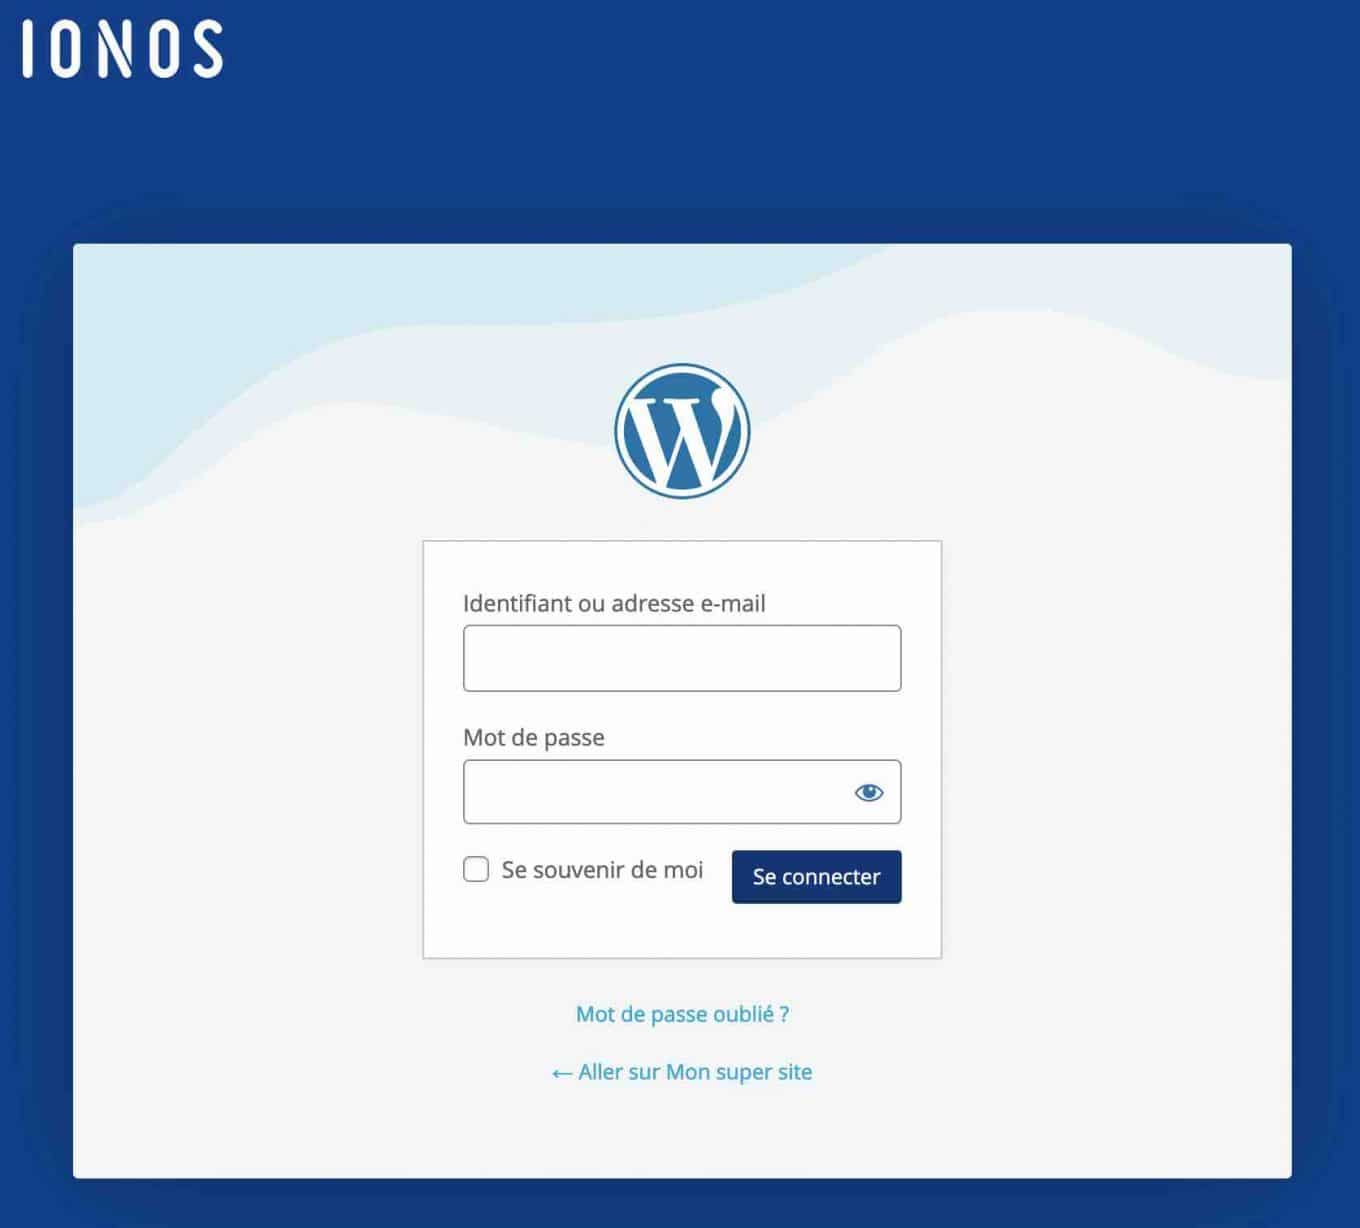 La page de connexion à WordPress proposée par IONOS.